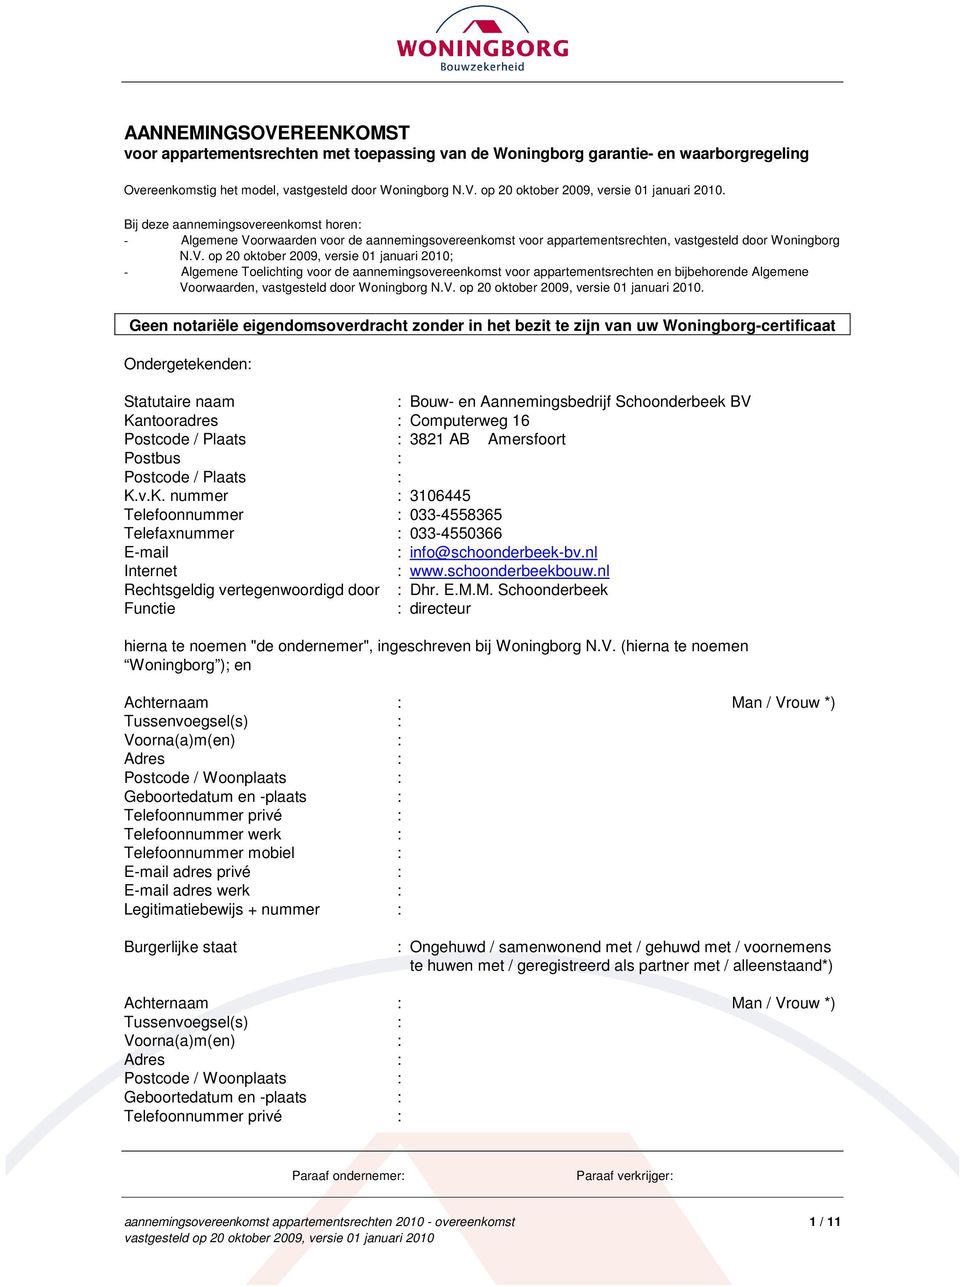 orwaarden voor de aannemingsovereenkomst voor appartementsrechten, vastgesteld door Woningborg N.V.